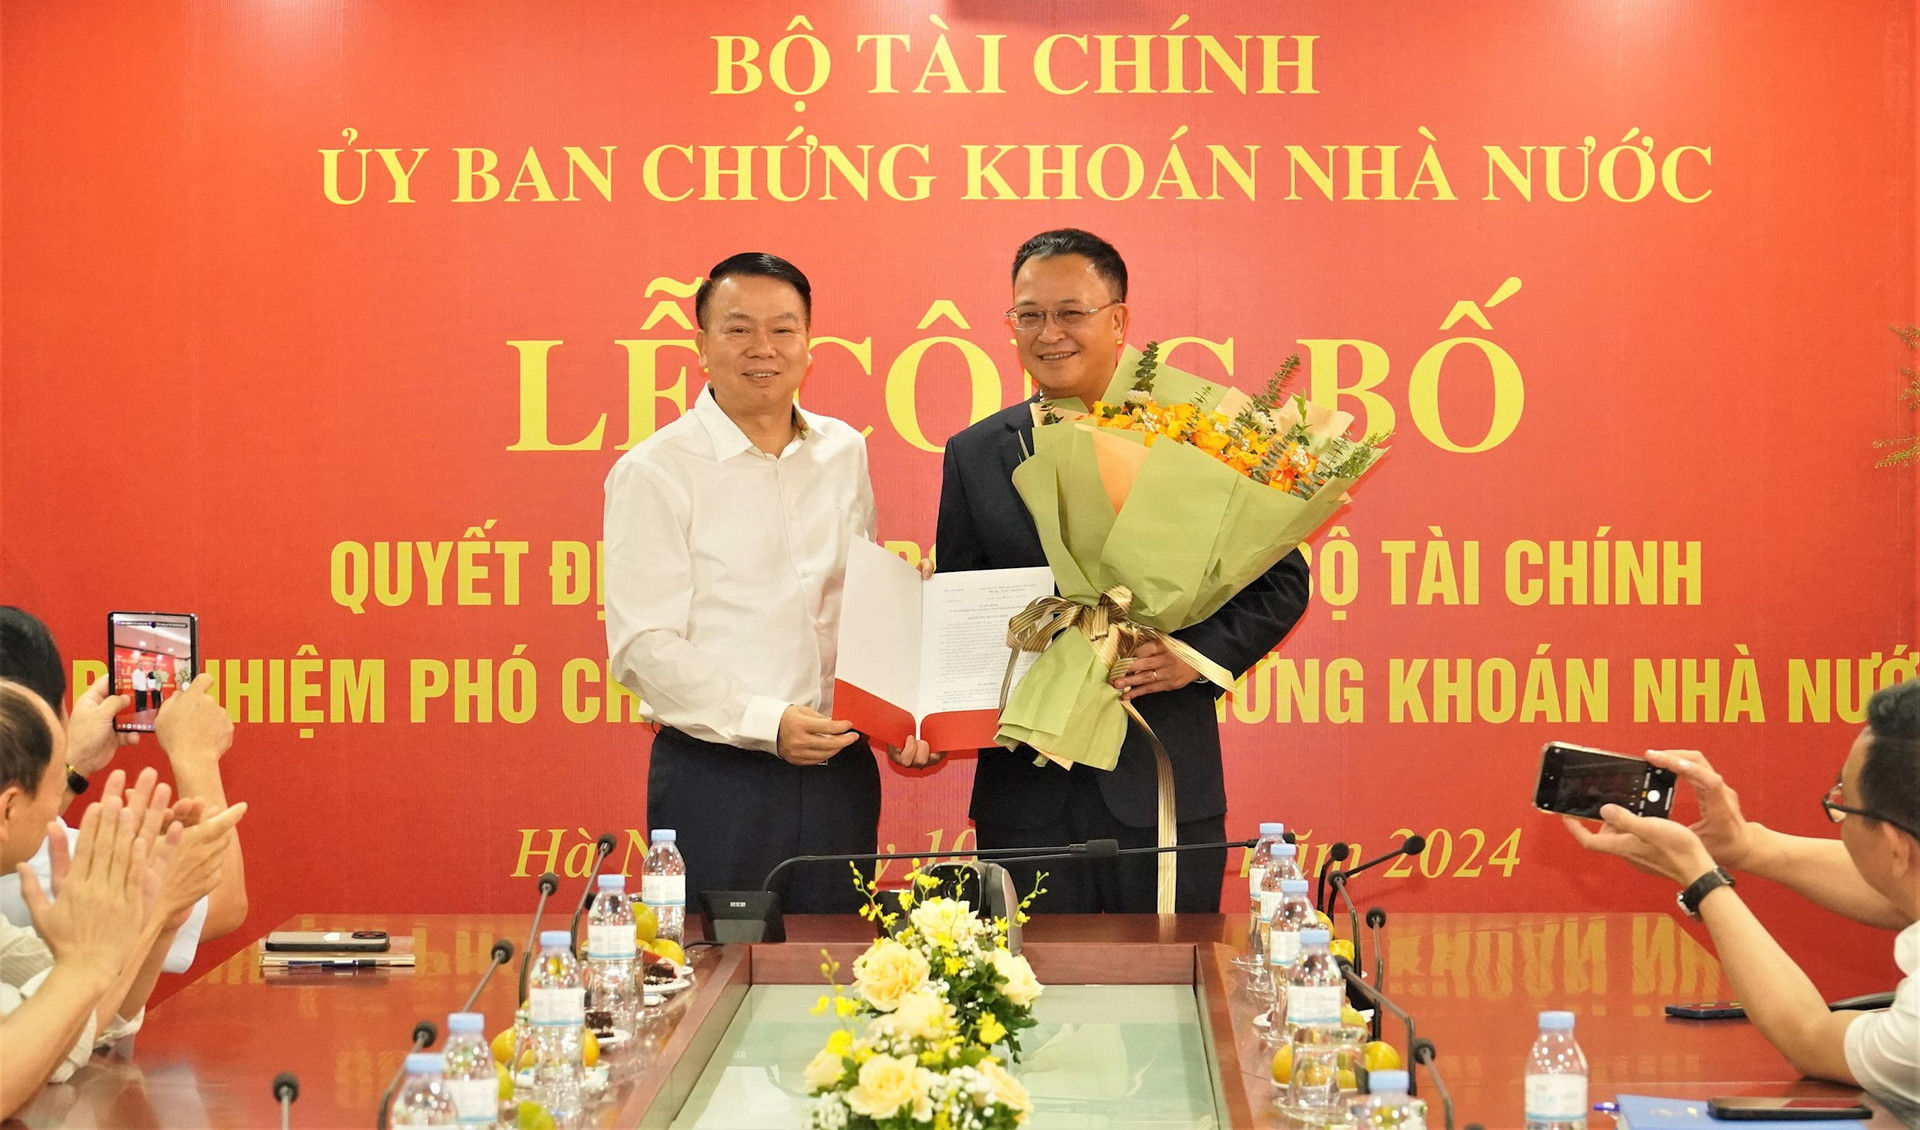 Thứ trưởng Bộ Tài chính Nguyễn Đức Chi trao Quyết định bổ nhiệm đồng chí Bùi Hoàng Hải giữ chức vụ Phó Chủ tịch Uỷ ban Chứng khoán Nhà nước. Ảnh: SSC